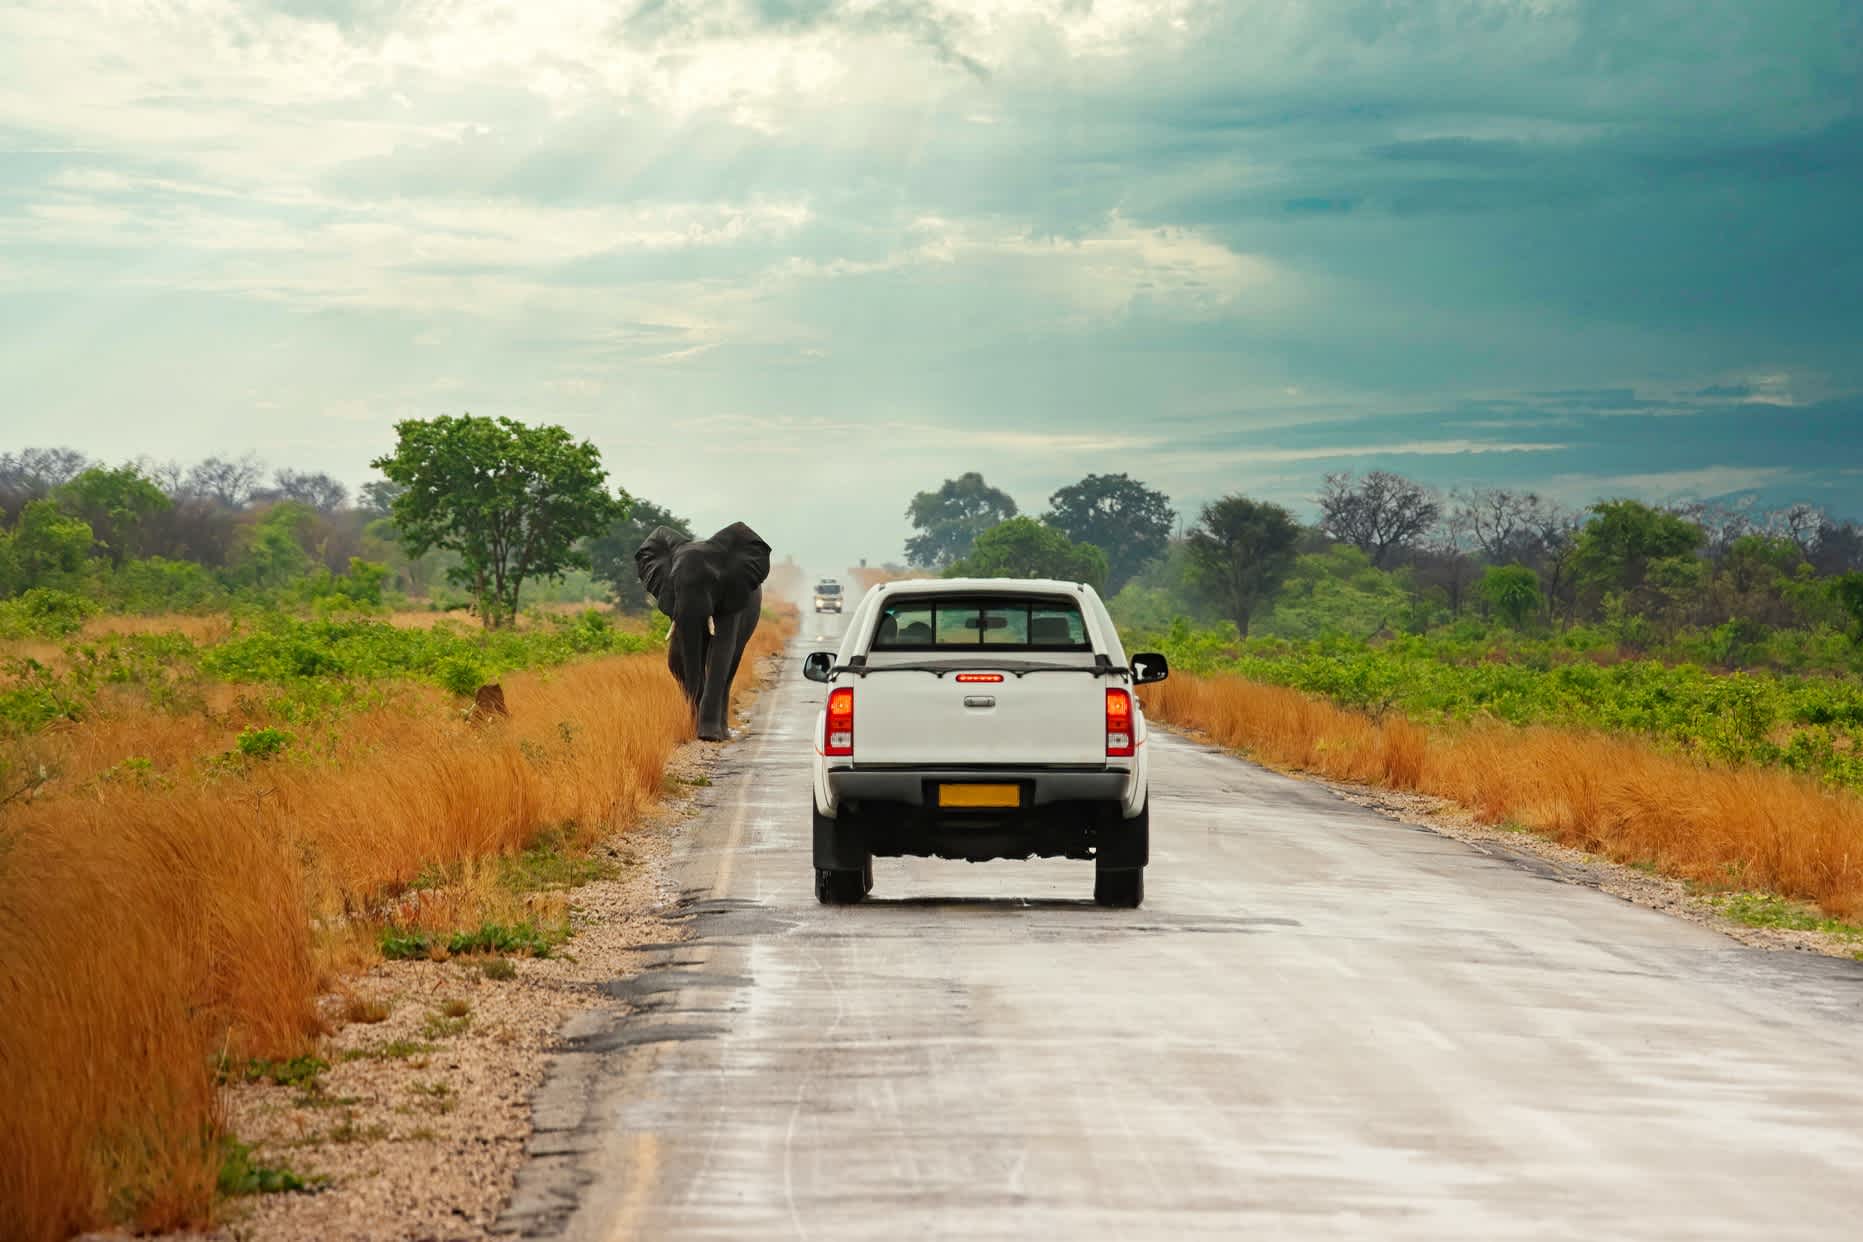 Der Elefant spaziert auf dem Highway zwischen den Autos, Kasane, Botswana.